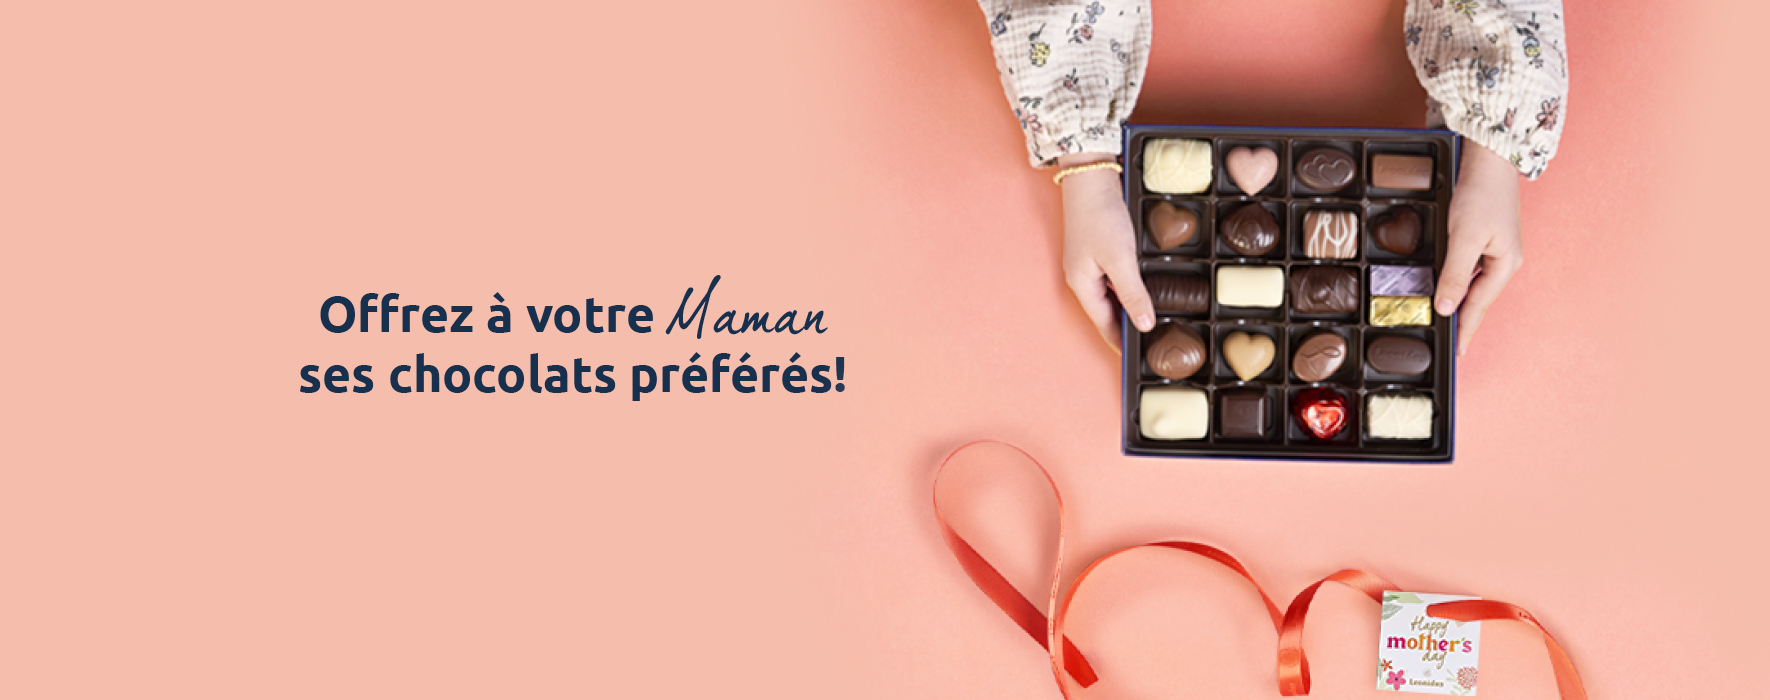 Offrez-lui ses chocolats préférés! | Webshop Leonidas